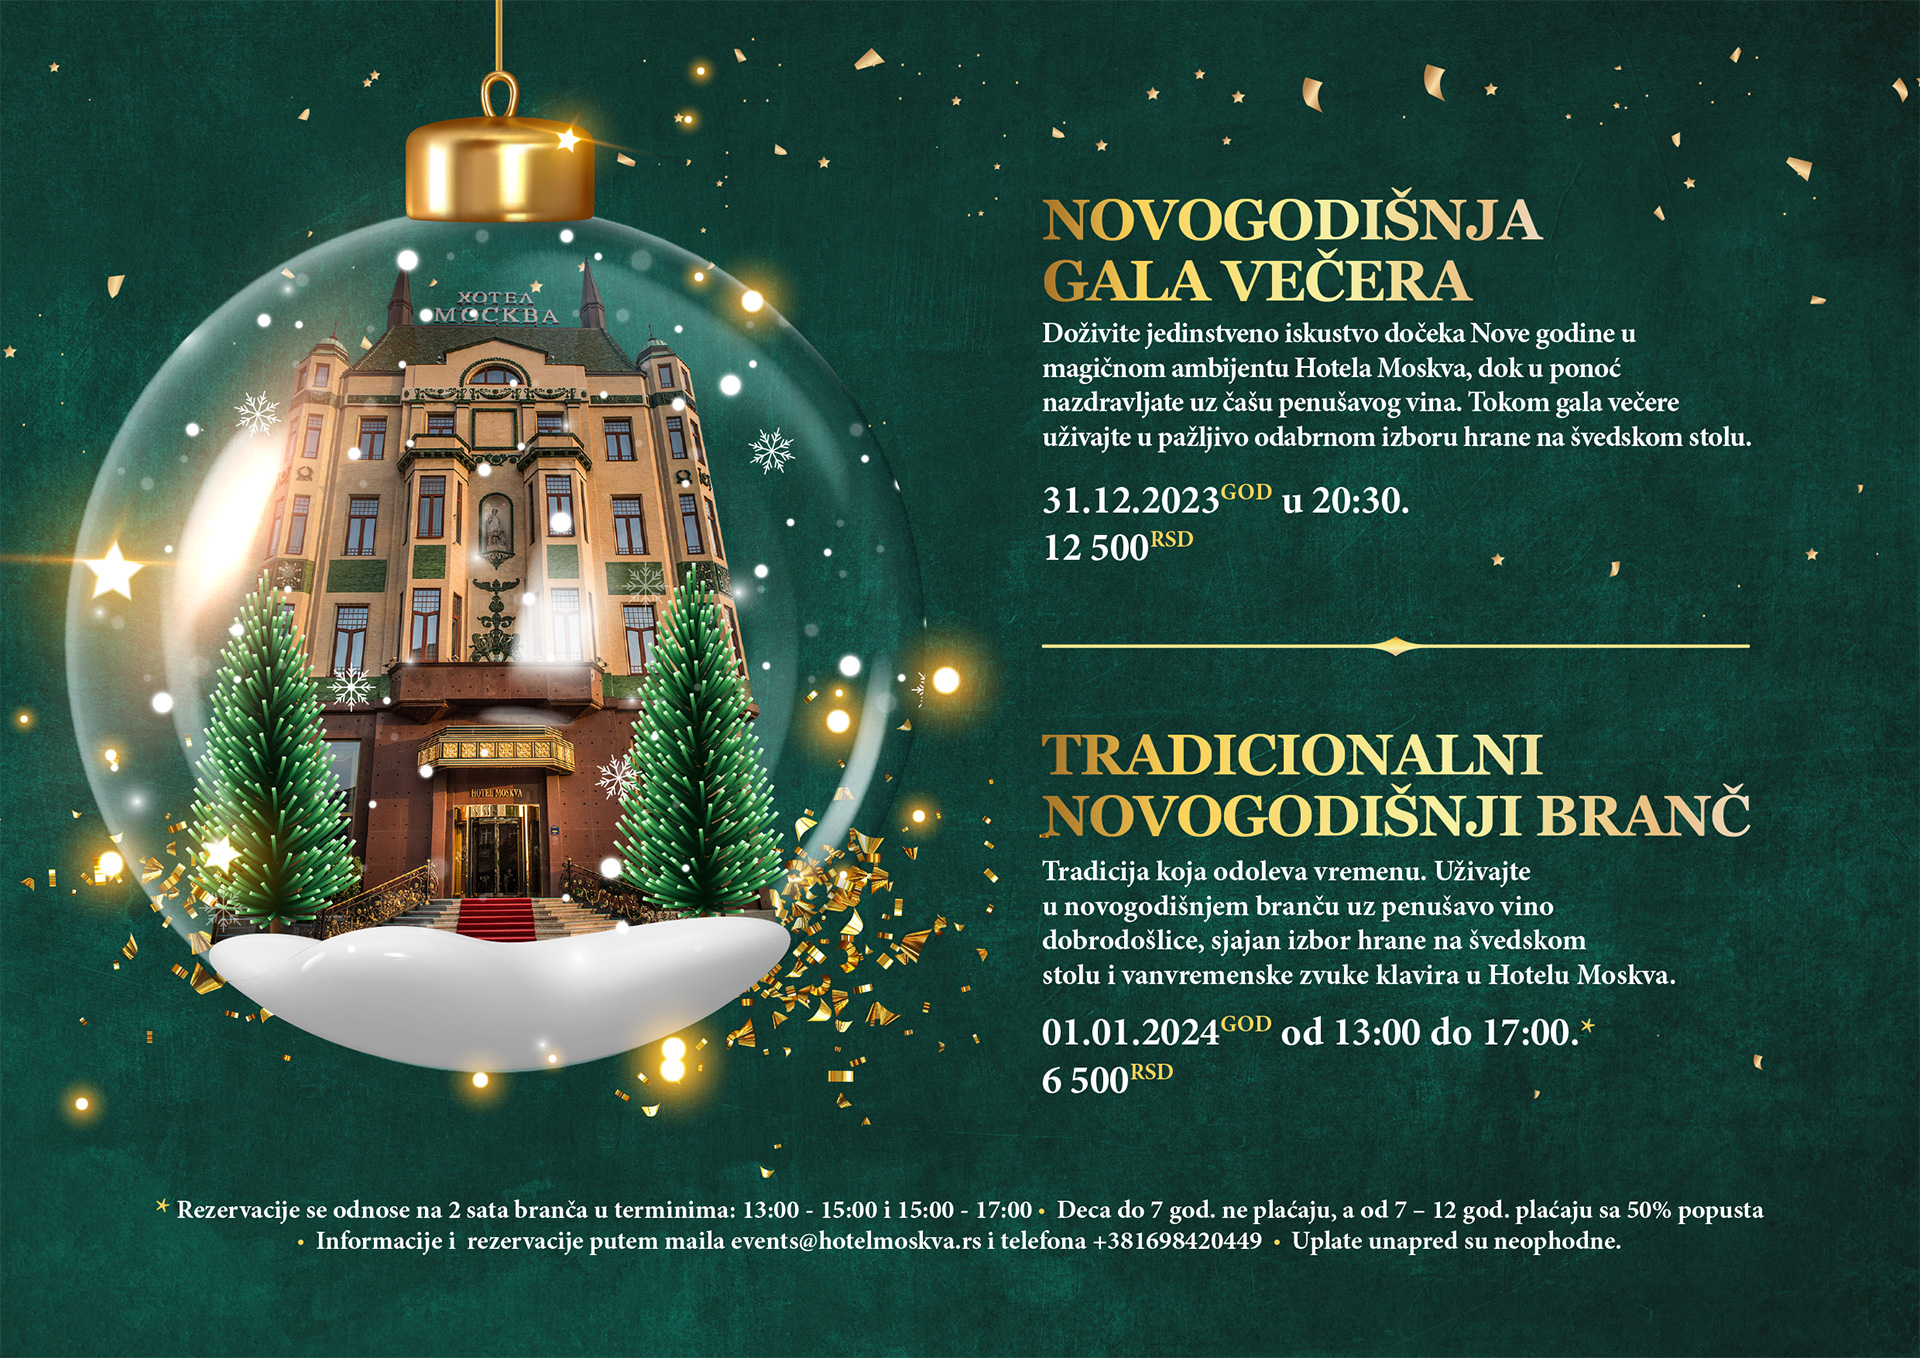 HOTEL MOSKVA jelovnik korice PRIKAZ 1 PREDLOG 3 1 Ovde se održava najglamurozniji novogodišnji branč u gradu   za kraljevski osećaj luksuza, otmenosti i prestiža